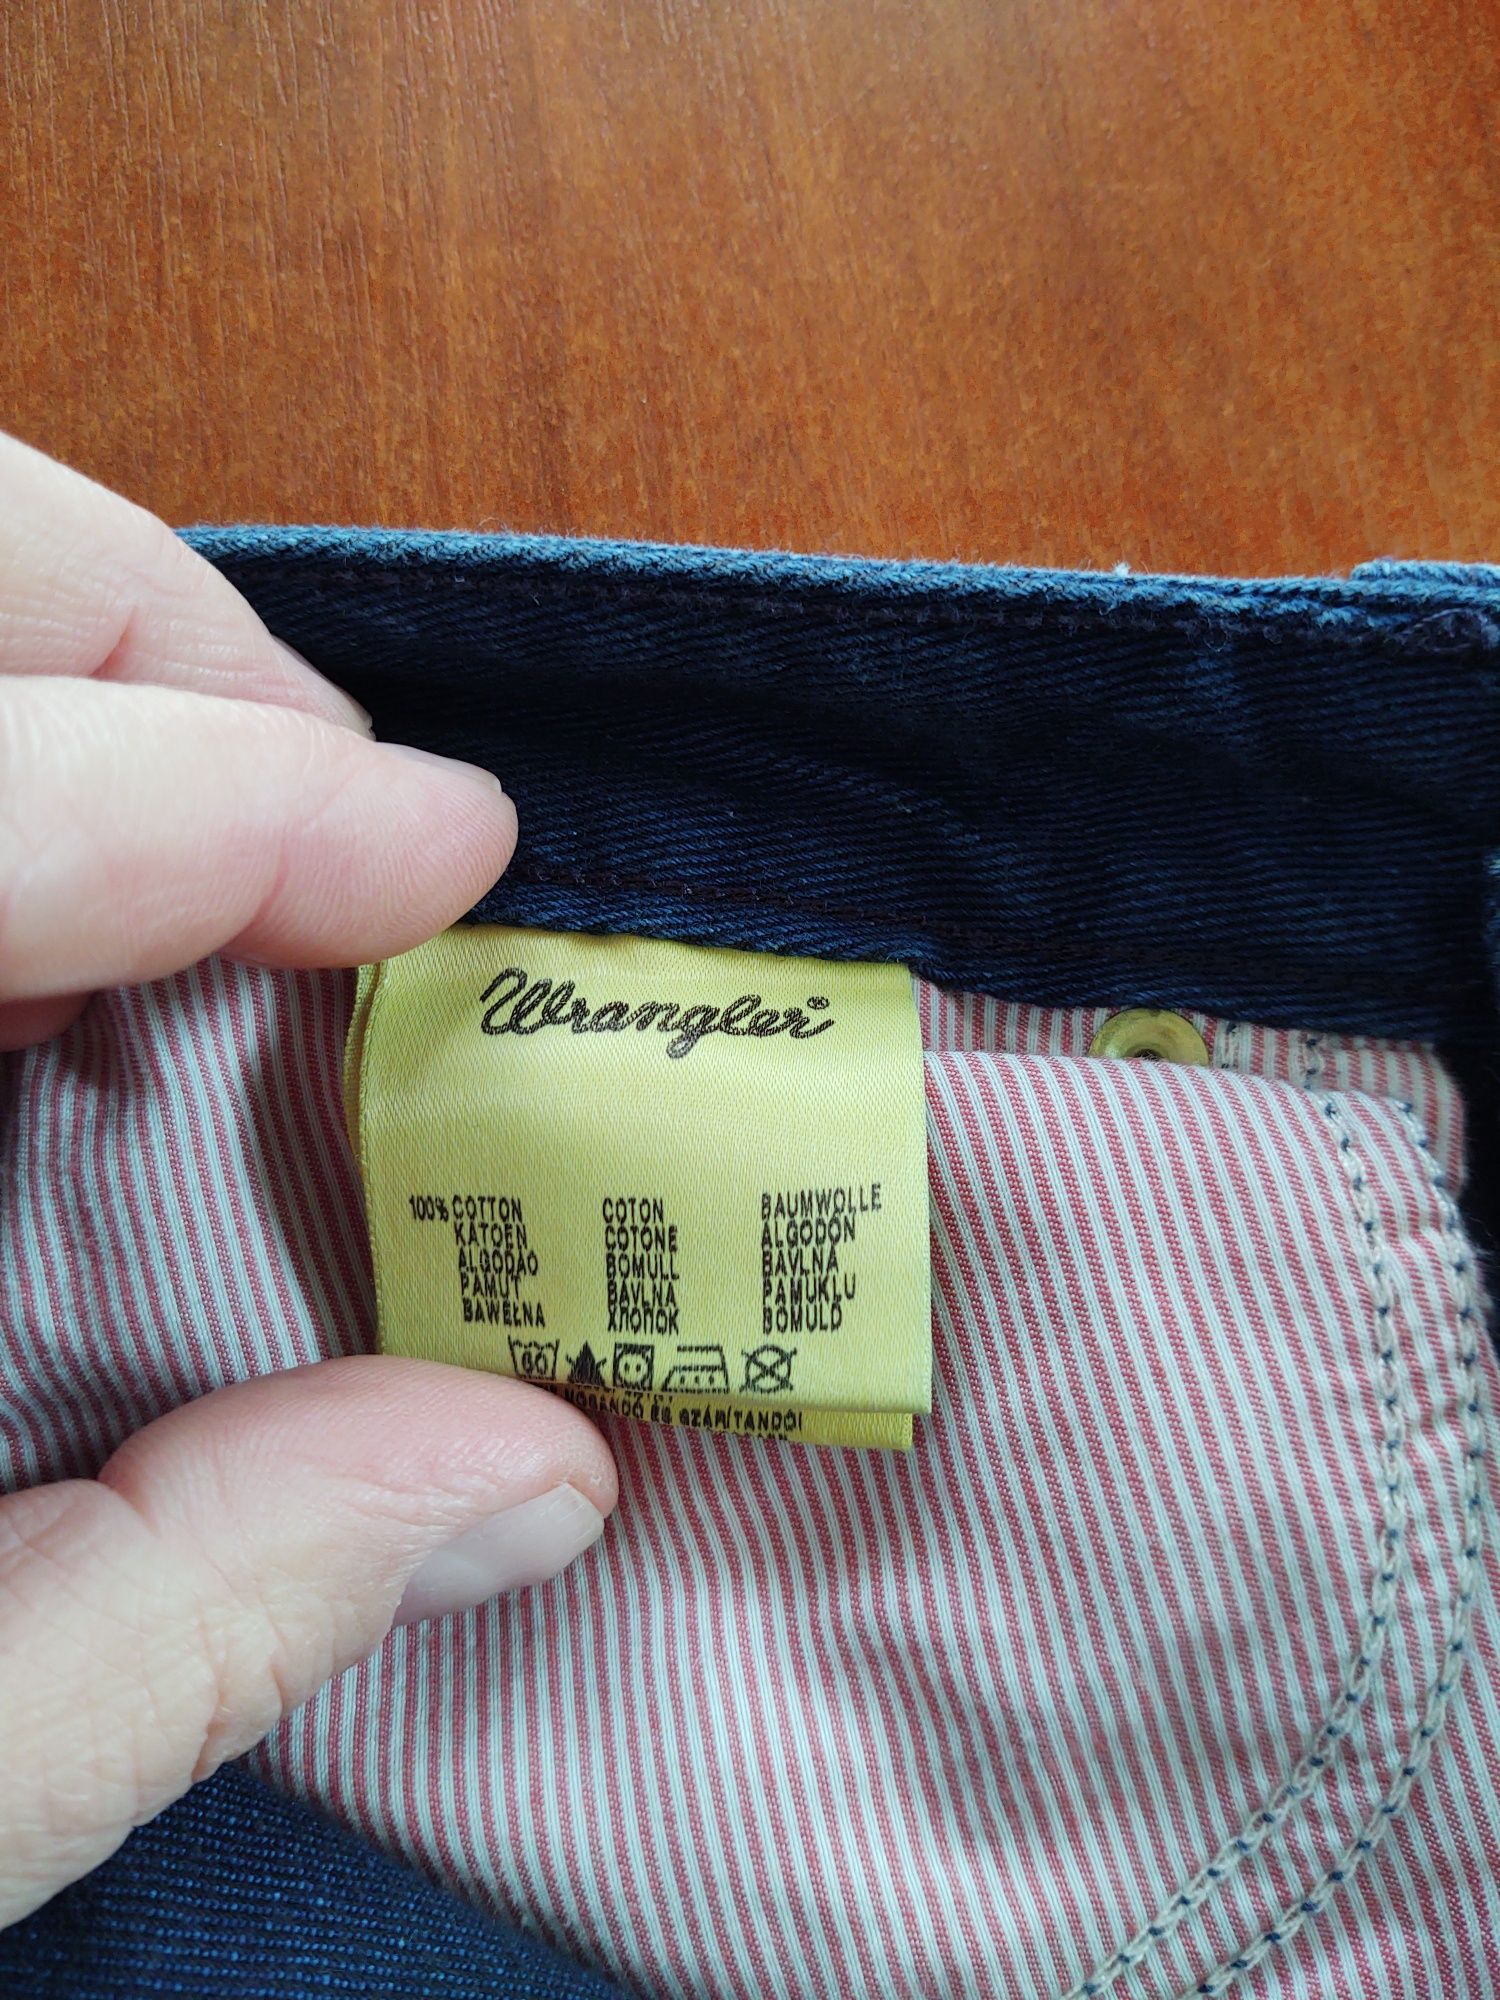 Продам джинсы Wrangler.